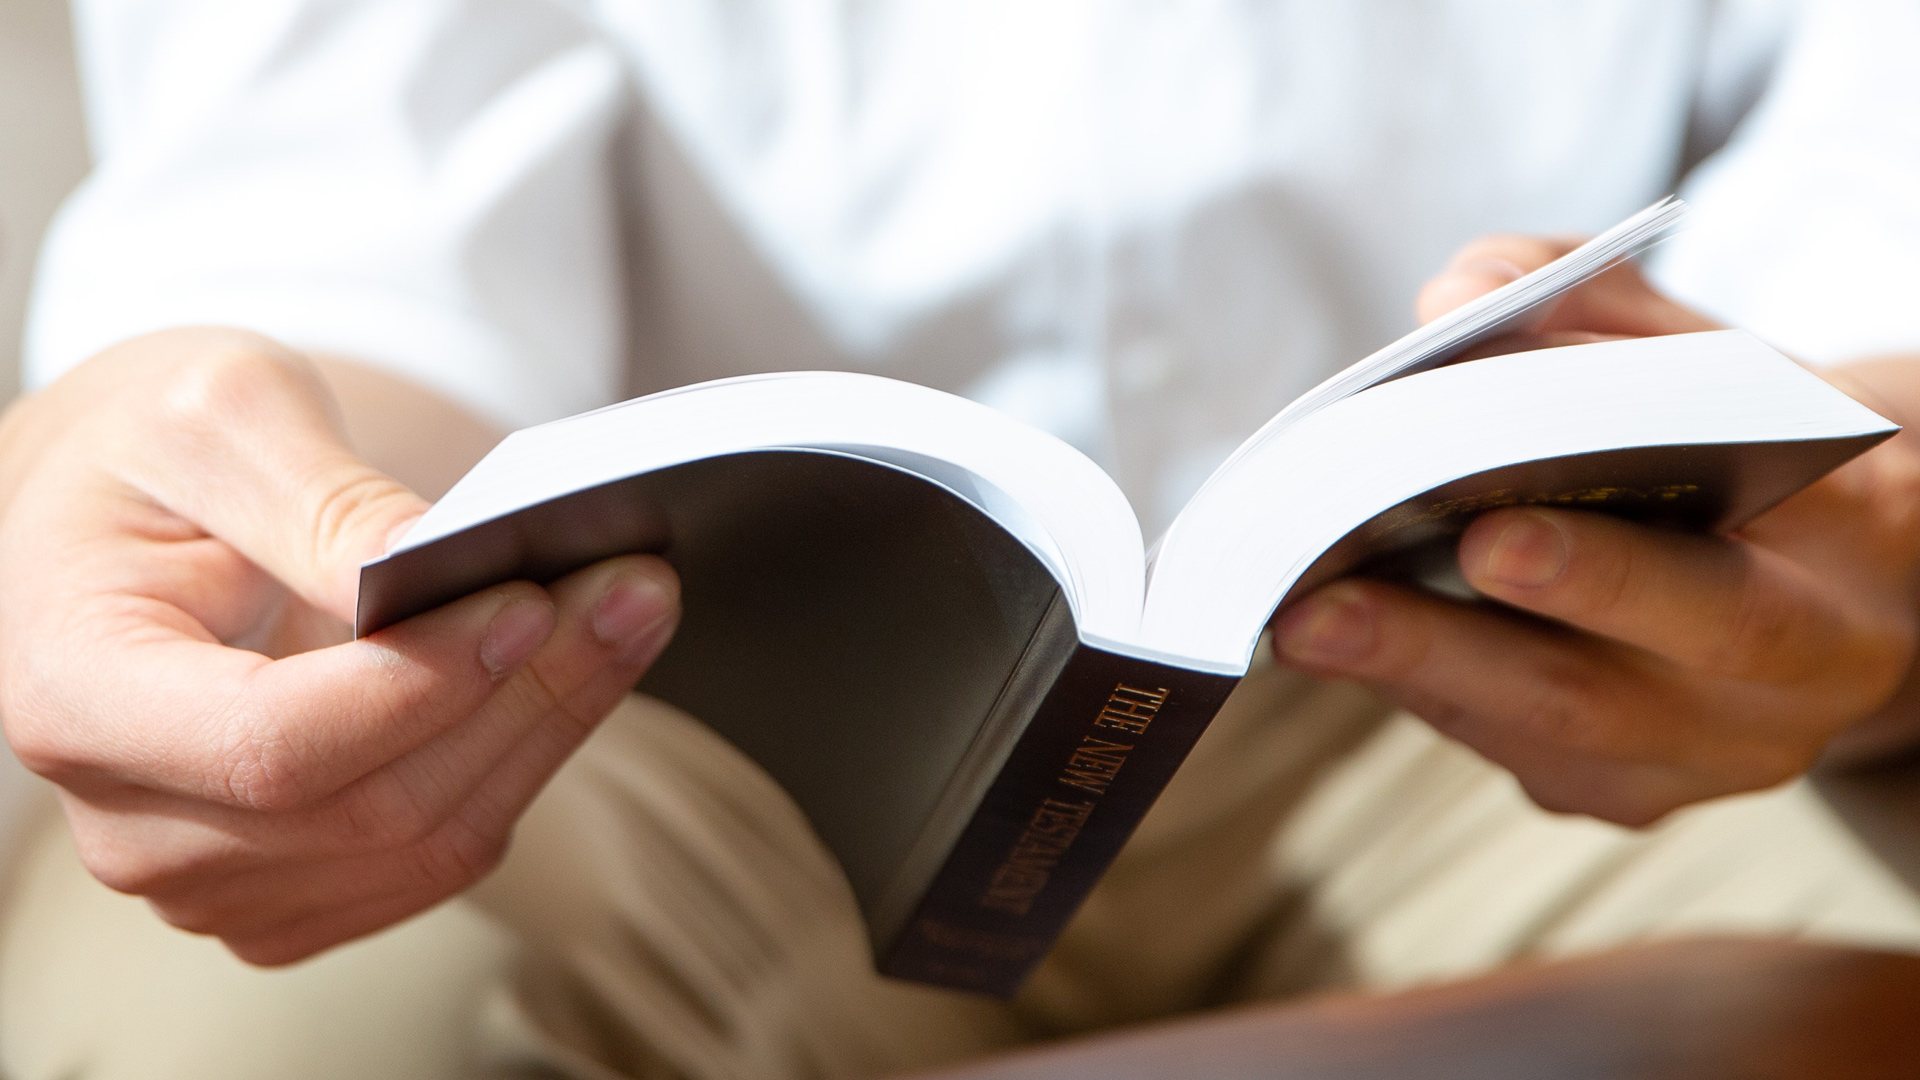 La clave del éxito está en mi relación con la Biblia – Leer La Biblia